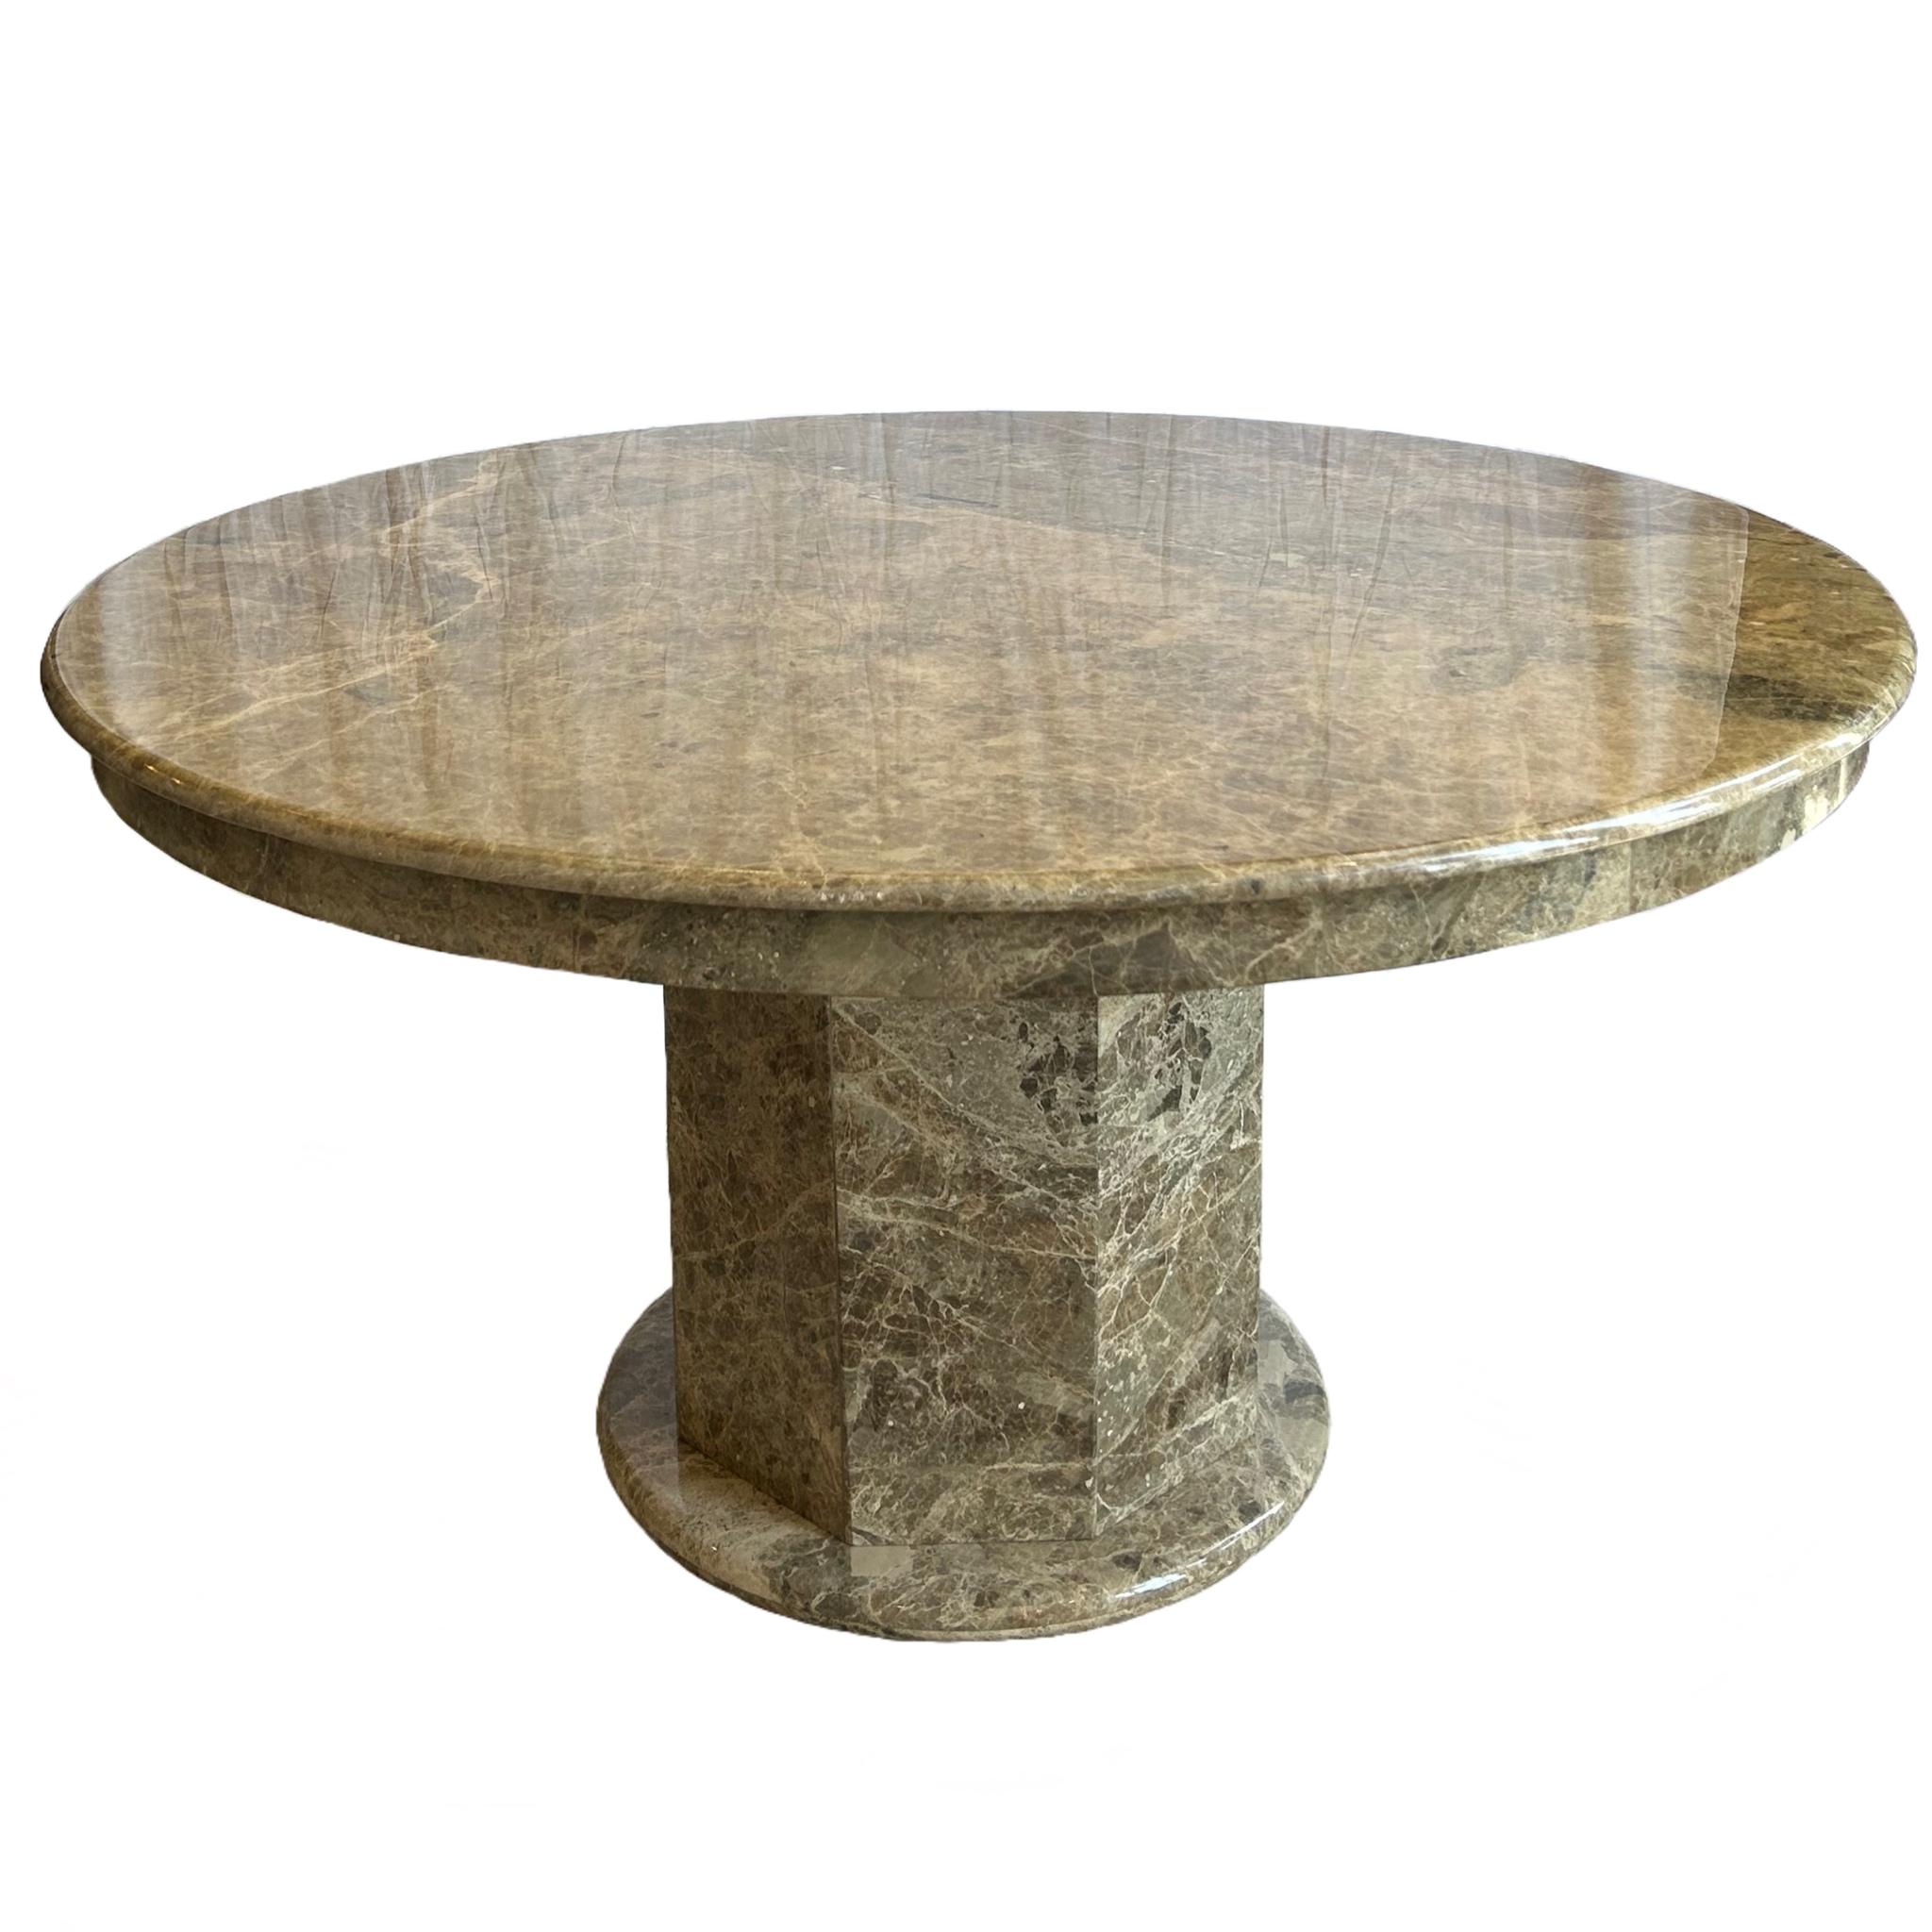 Grande table ronde en marbre sur une base de pilier à 8 côtés

Marbre Noir et Tan avec veines blanches

